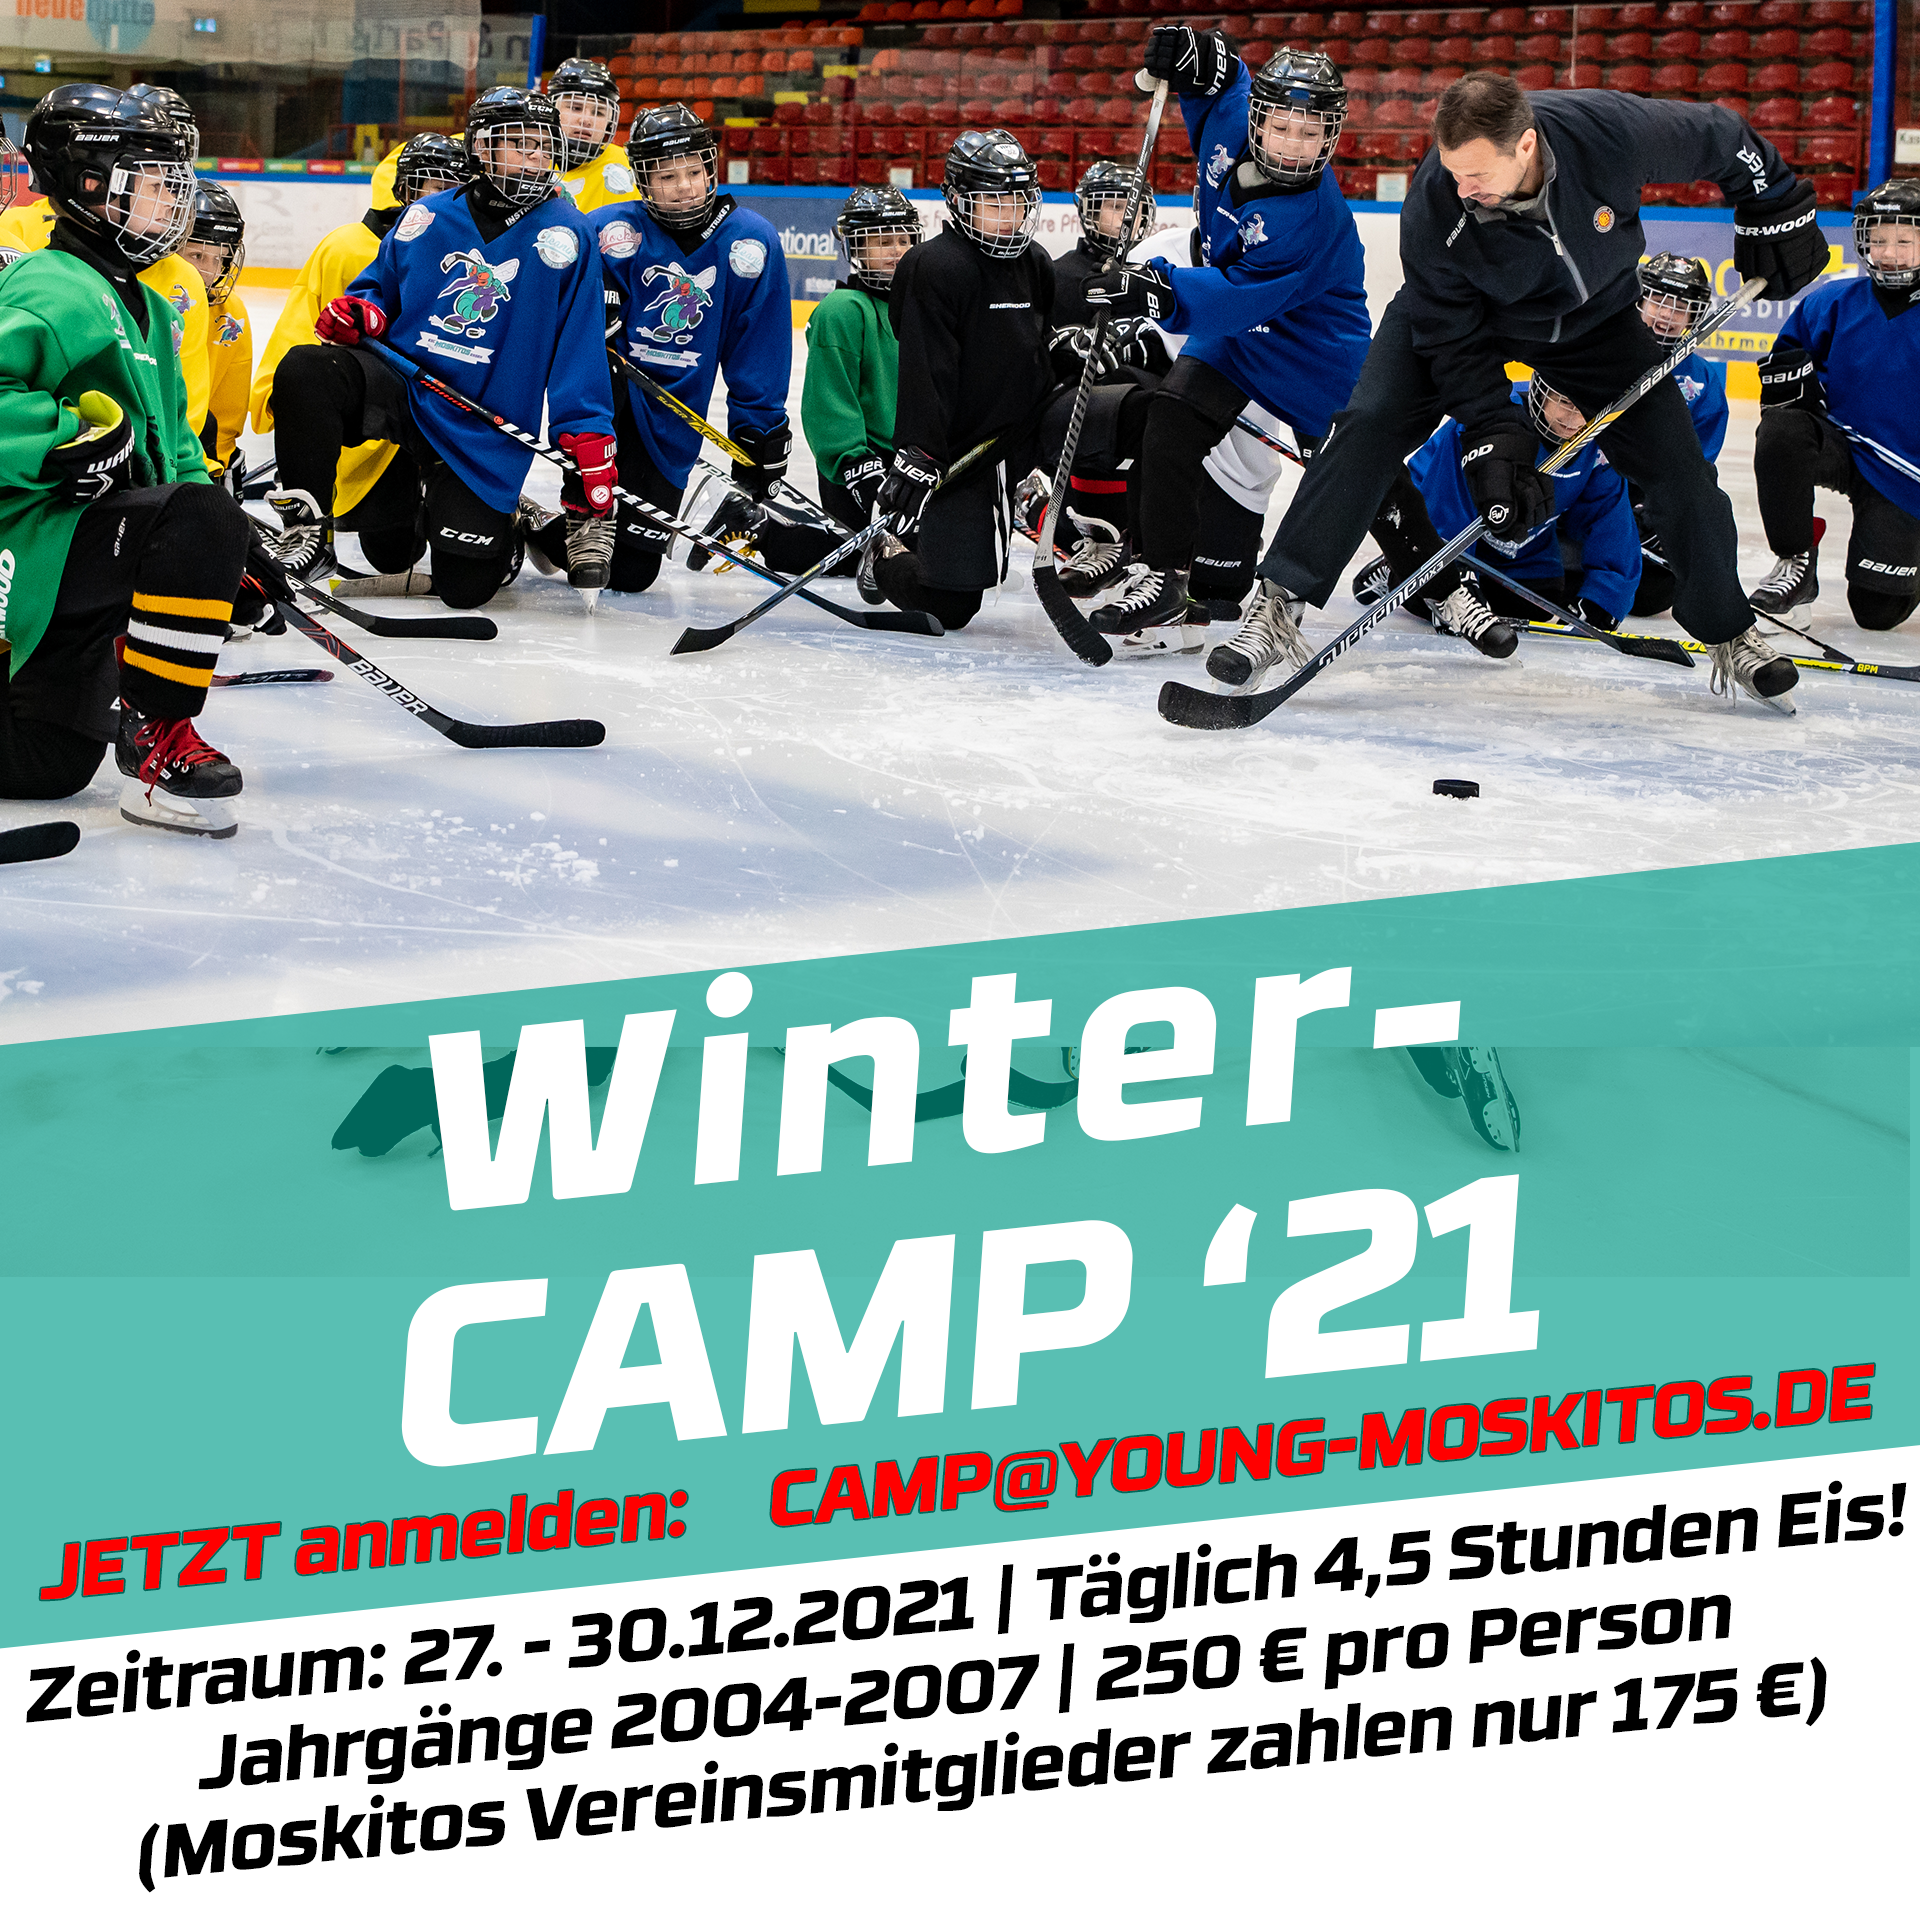 Wintercamp 2020 (2004-2007)